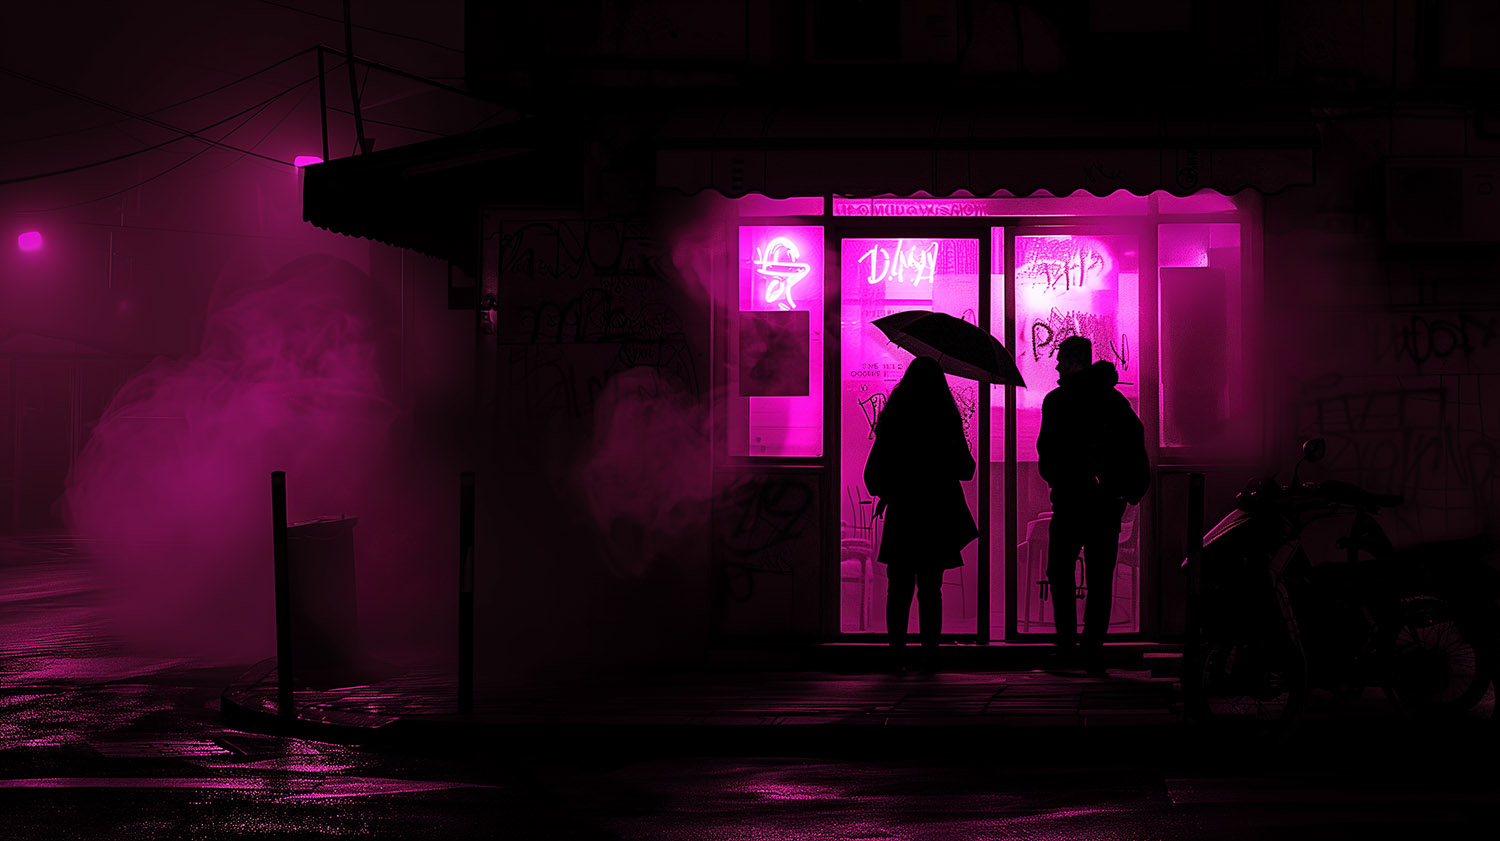 In einer dunklen Gasse ist eine Frau mit einem Regenschirm und ein Mann zu sehen, die vor einem Lokal stehen. Durch die Fenster des Lokals strahlt ein neonpinkes Licht, das durch den Nebel und den Regen hindurch schimmert. Die Szene wirkt mystisch und geheimnisvoll.